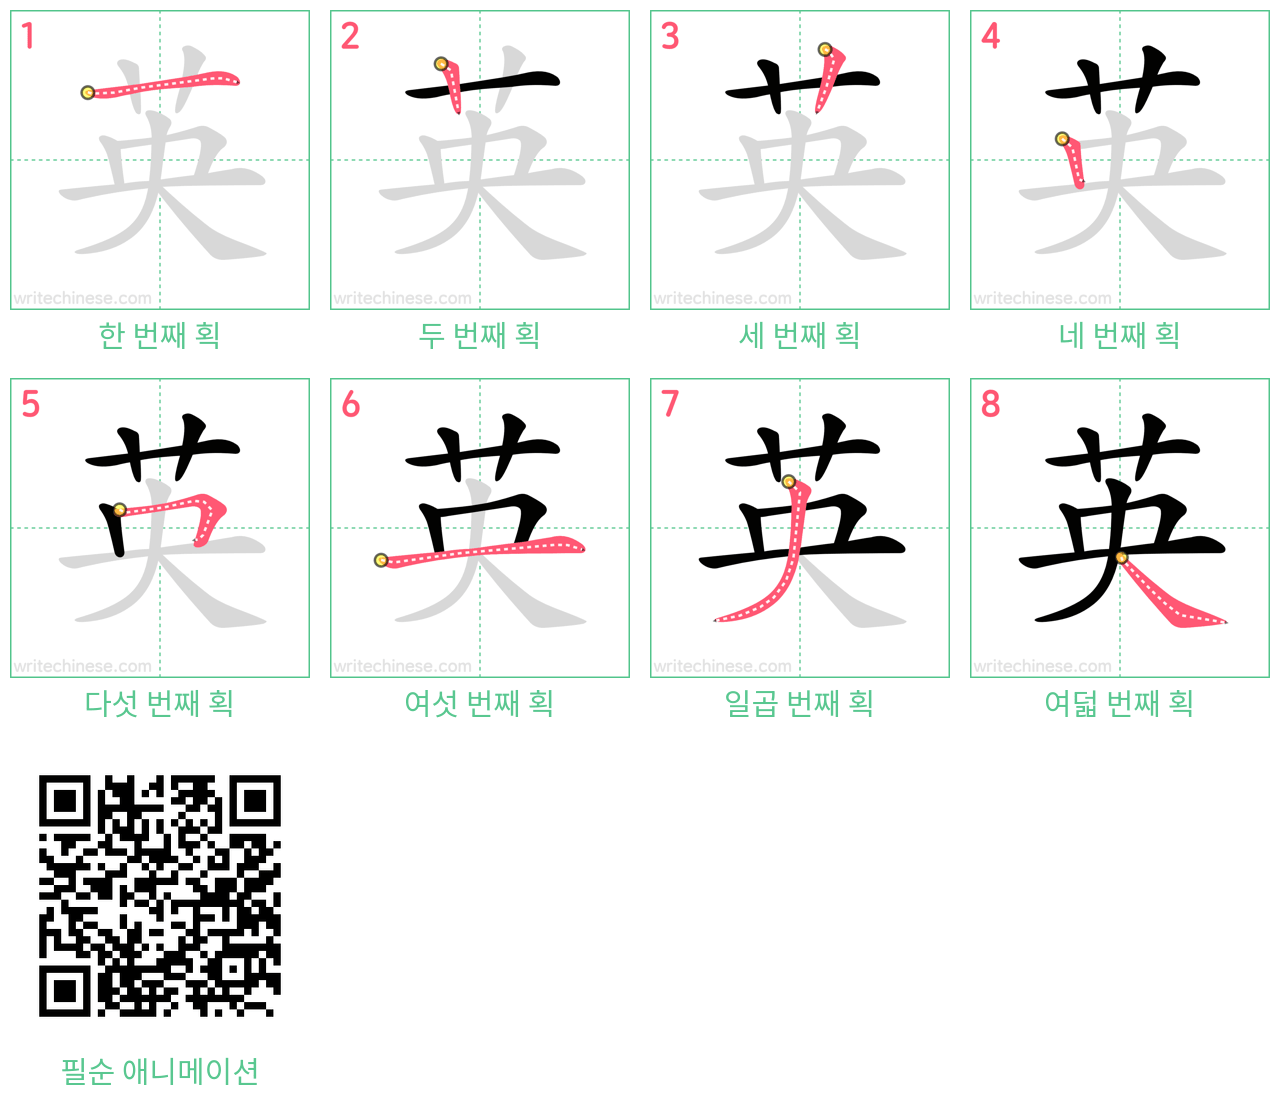 英 step-by-step stroke order diagrams